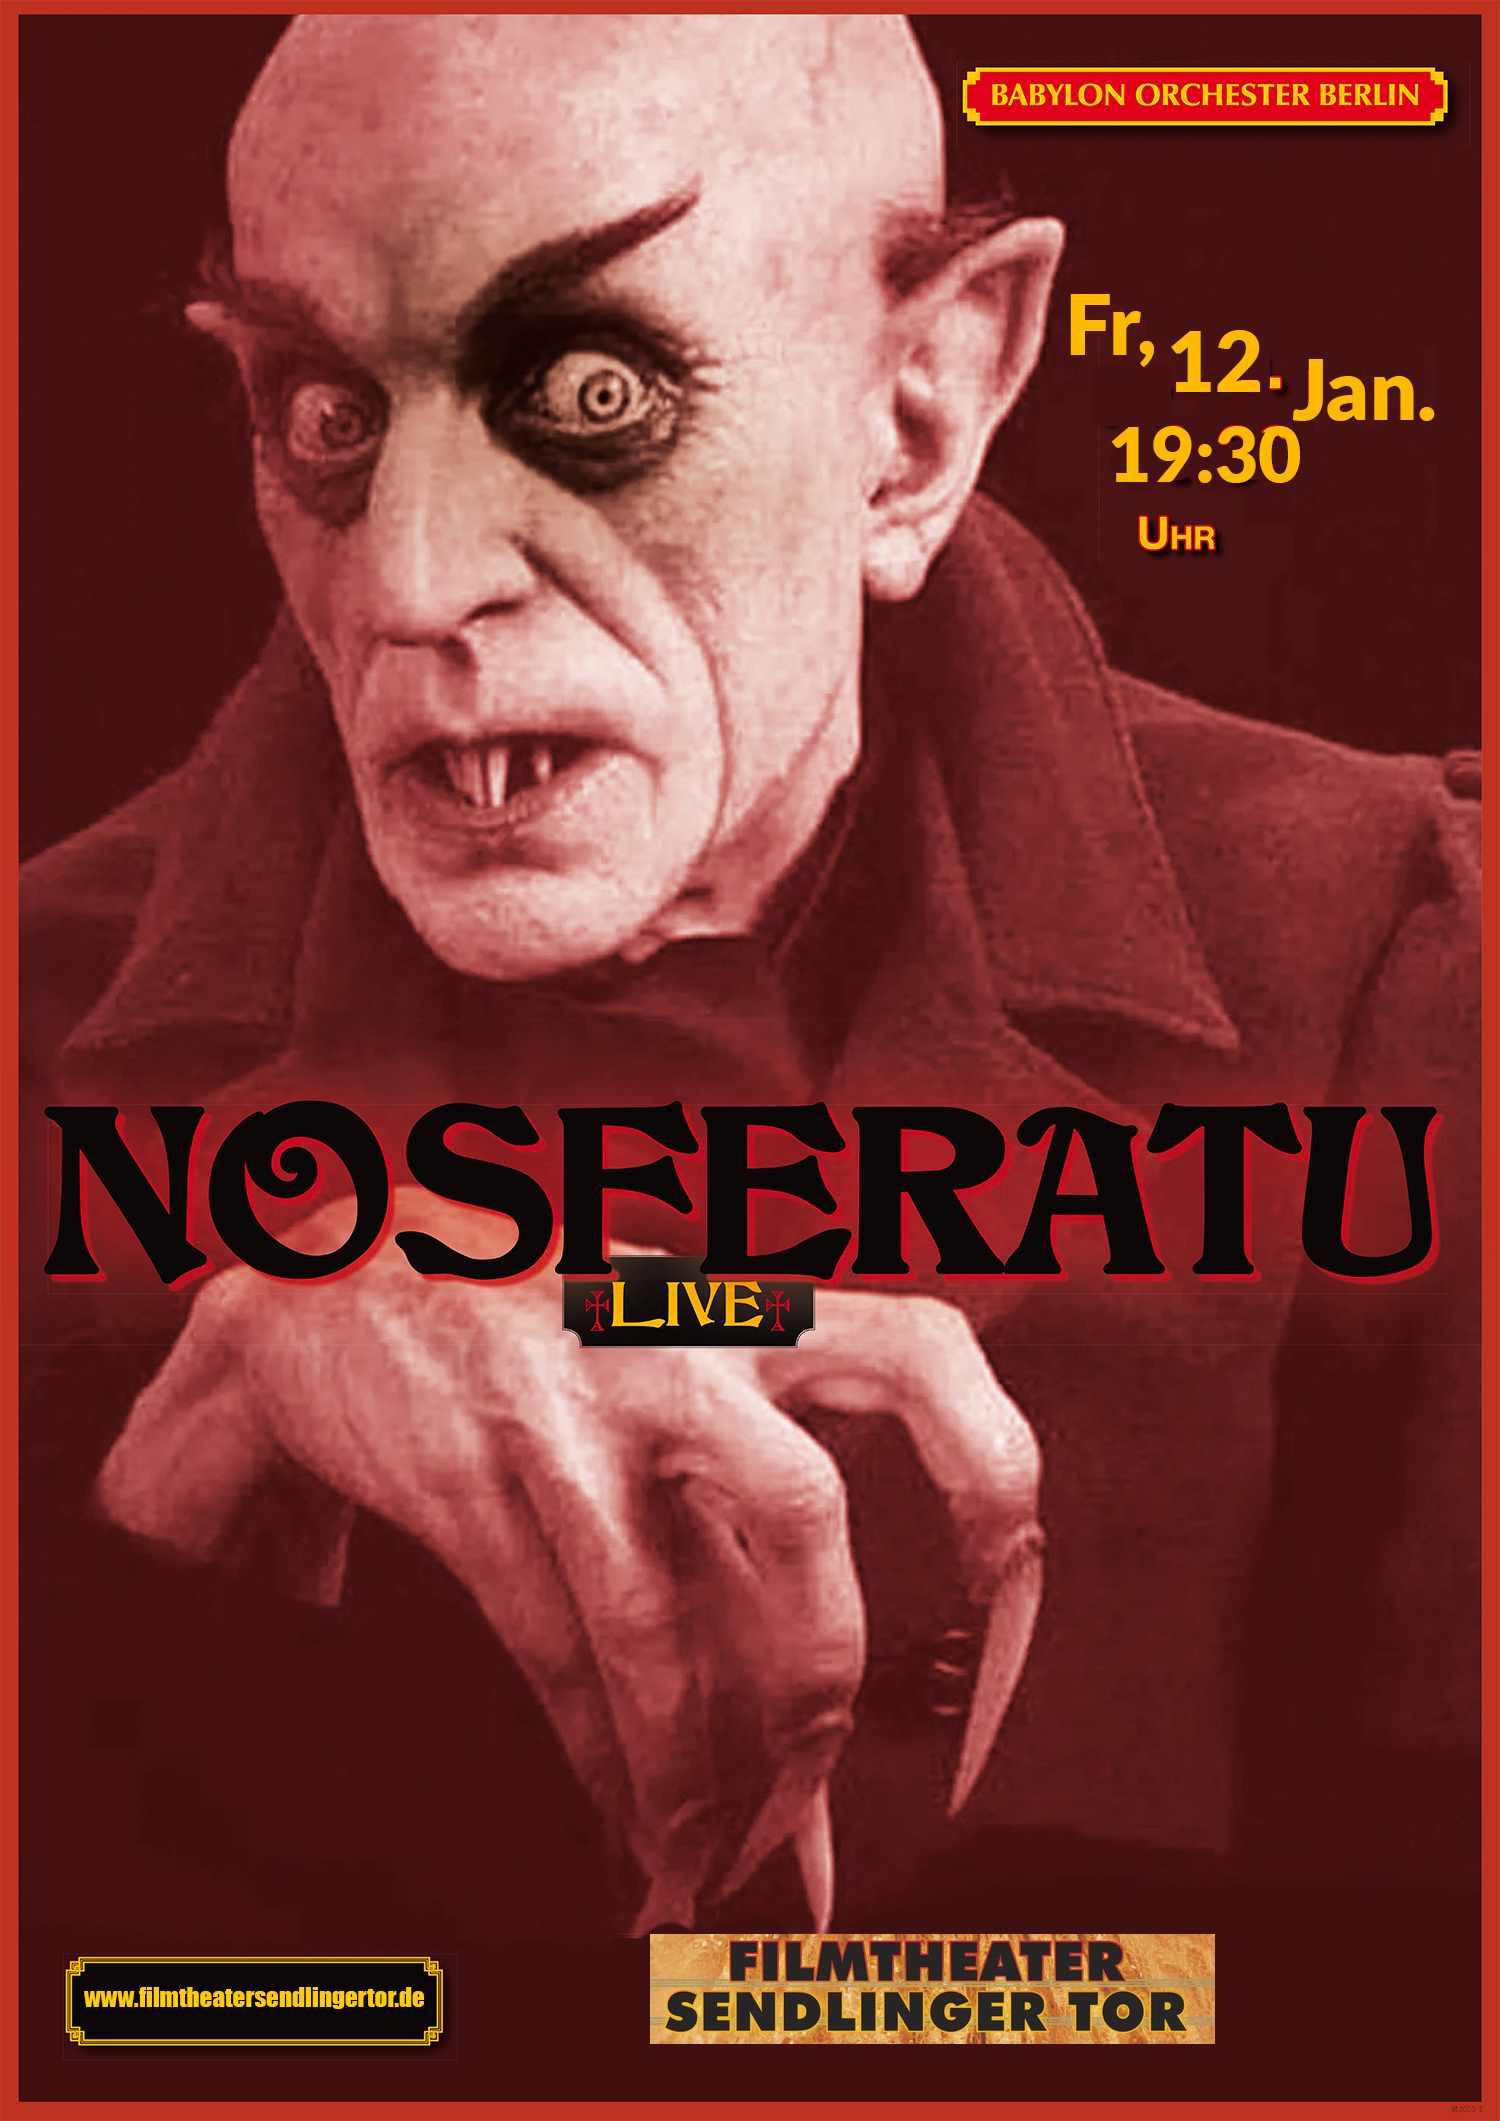 Nosferatu 24 02 17